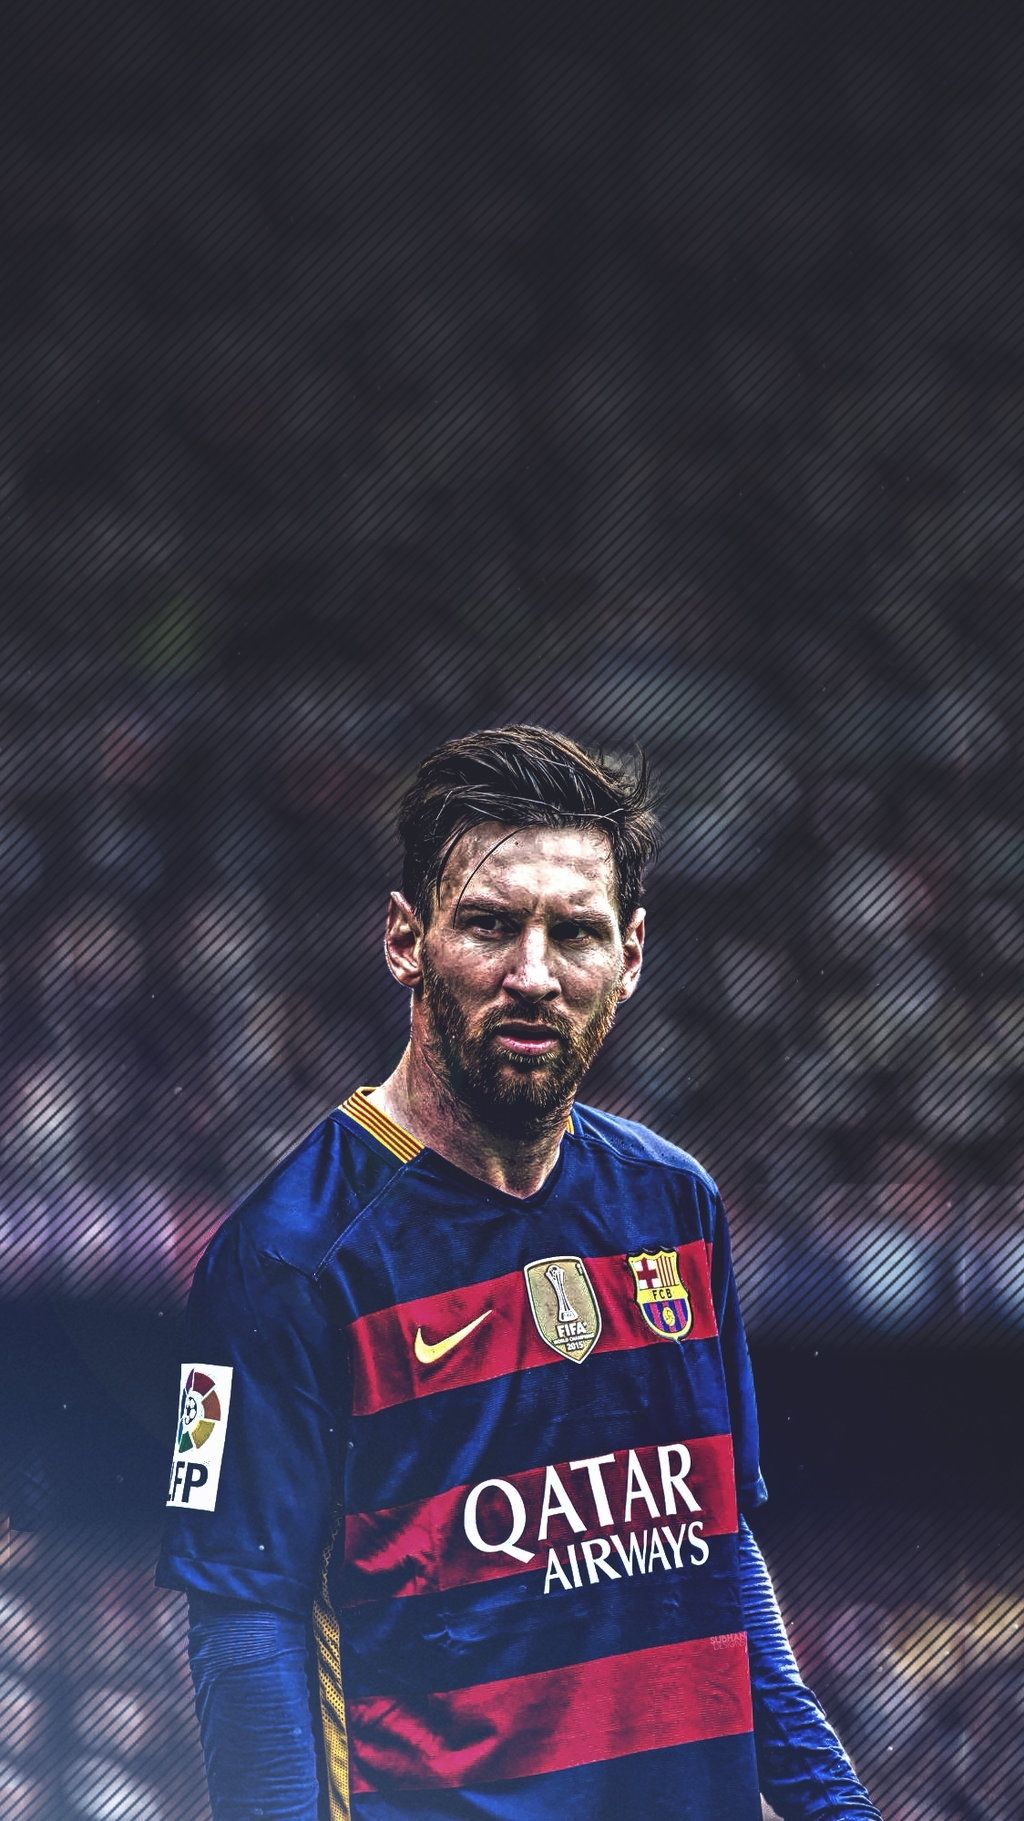 Bạn đang muốn tìm kiếm những hình nền ảnh chất lượng cao của Messi cho điện thoại của mình? Hãy tải ngay bức hình Best Messi Iphone Wallpaper download về máy để tỏa sáng và thể hiện đẳng cấp của bạn. Bức hình sẽ khiến cho bạn không thể rời mắt khỏi điện thoại mình.